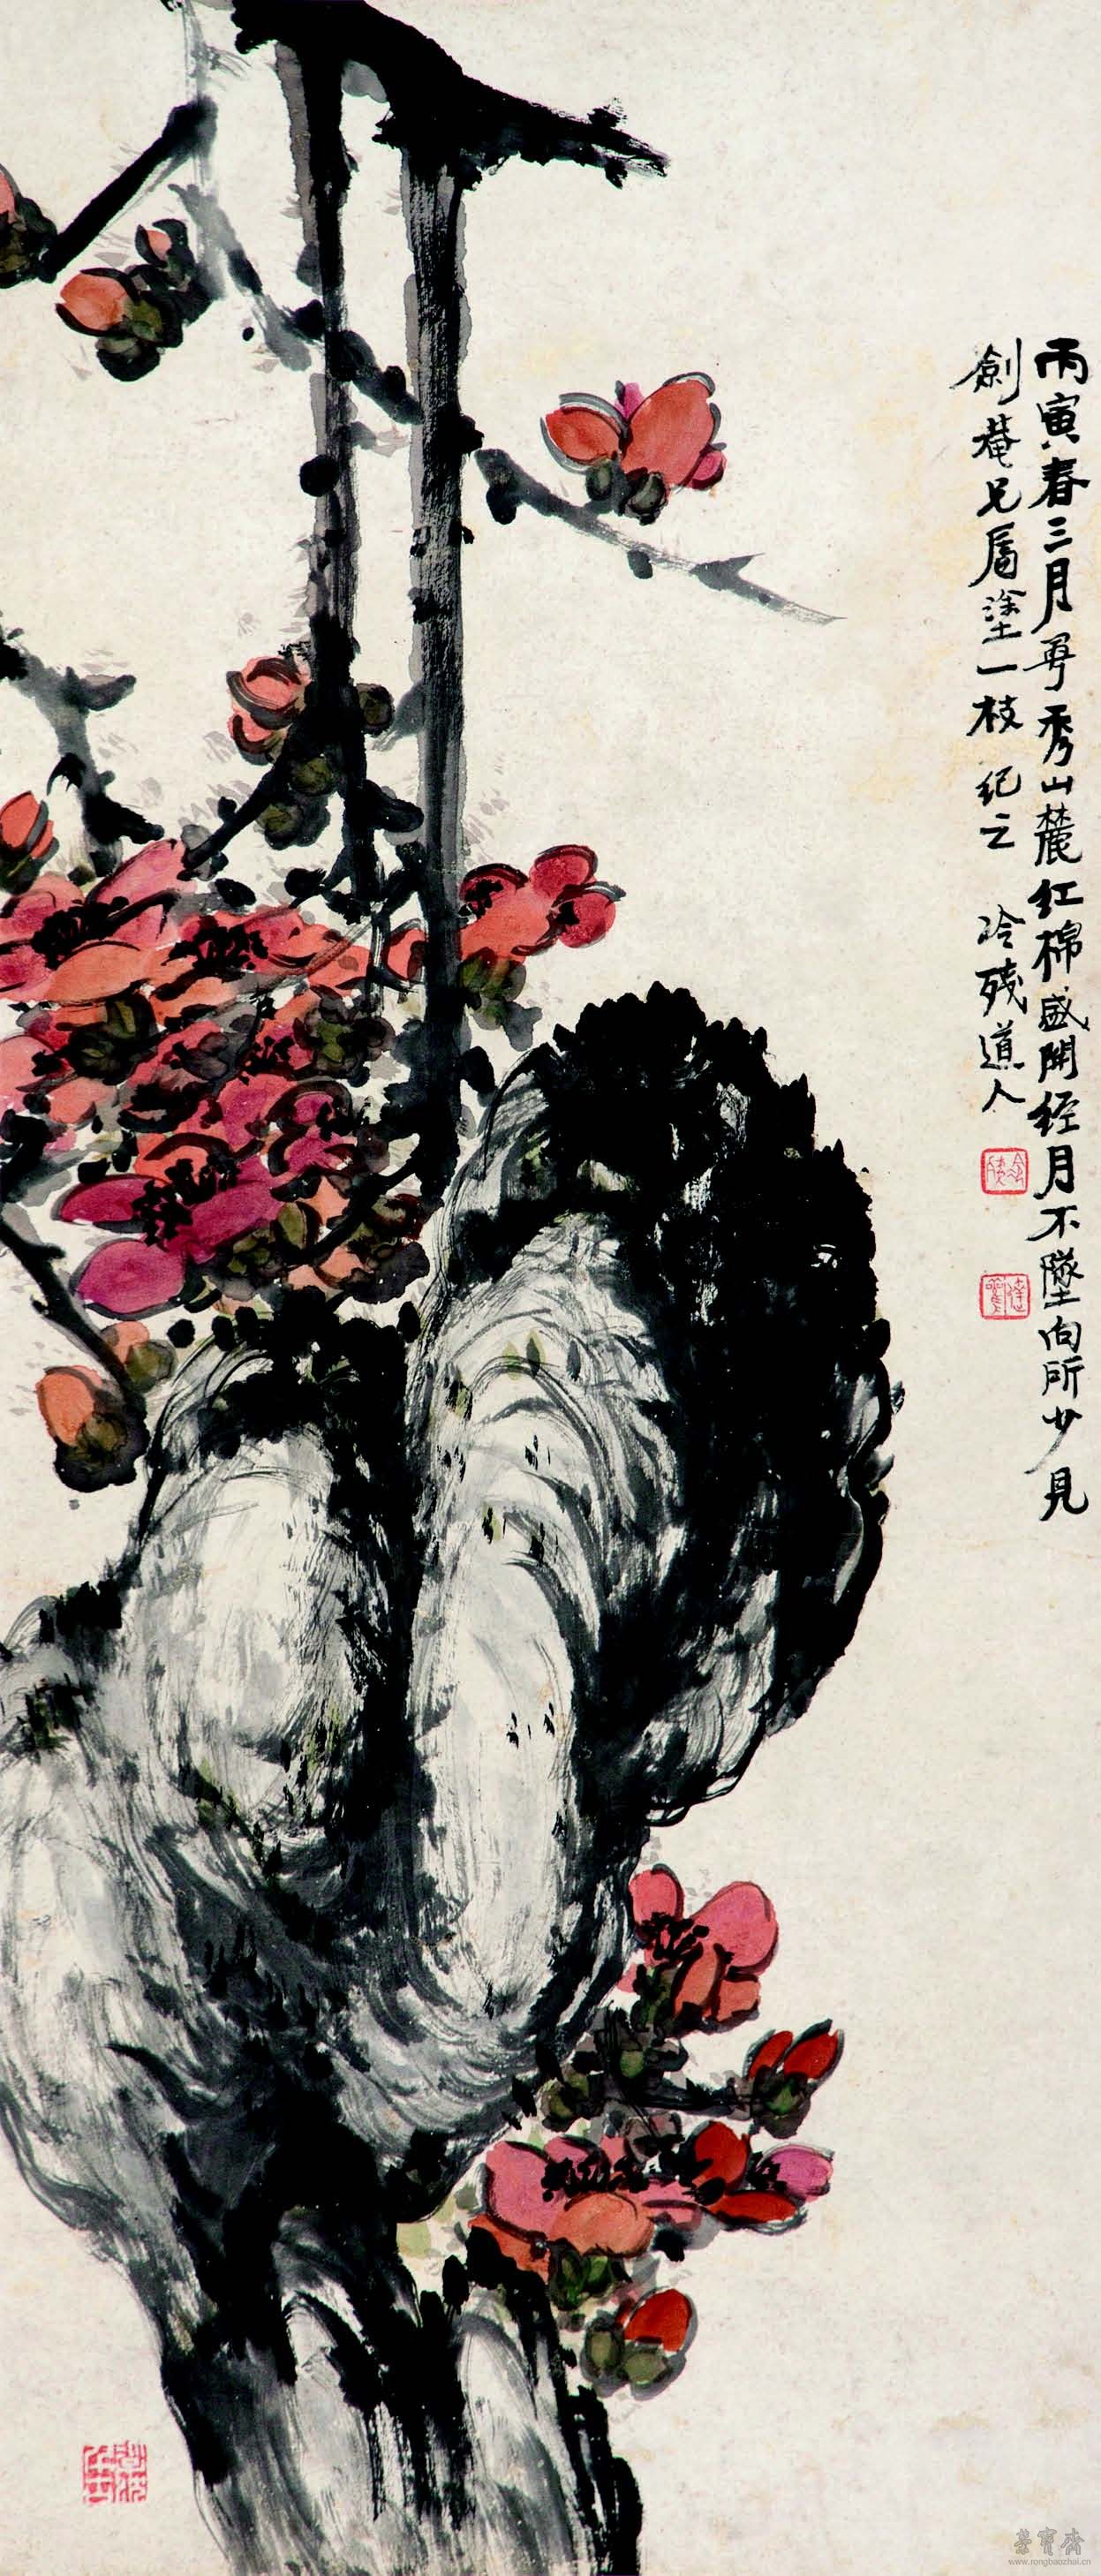 潘达微 红棉图 94cm×40cm 纸本设色 广东省博物馆藏